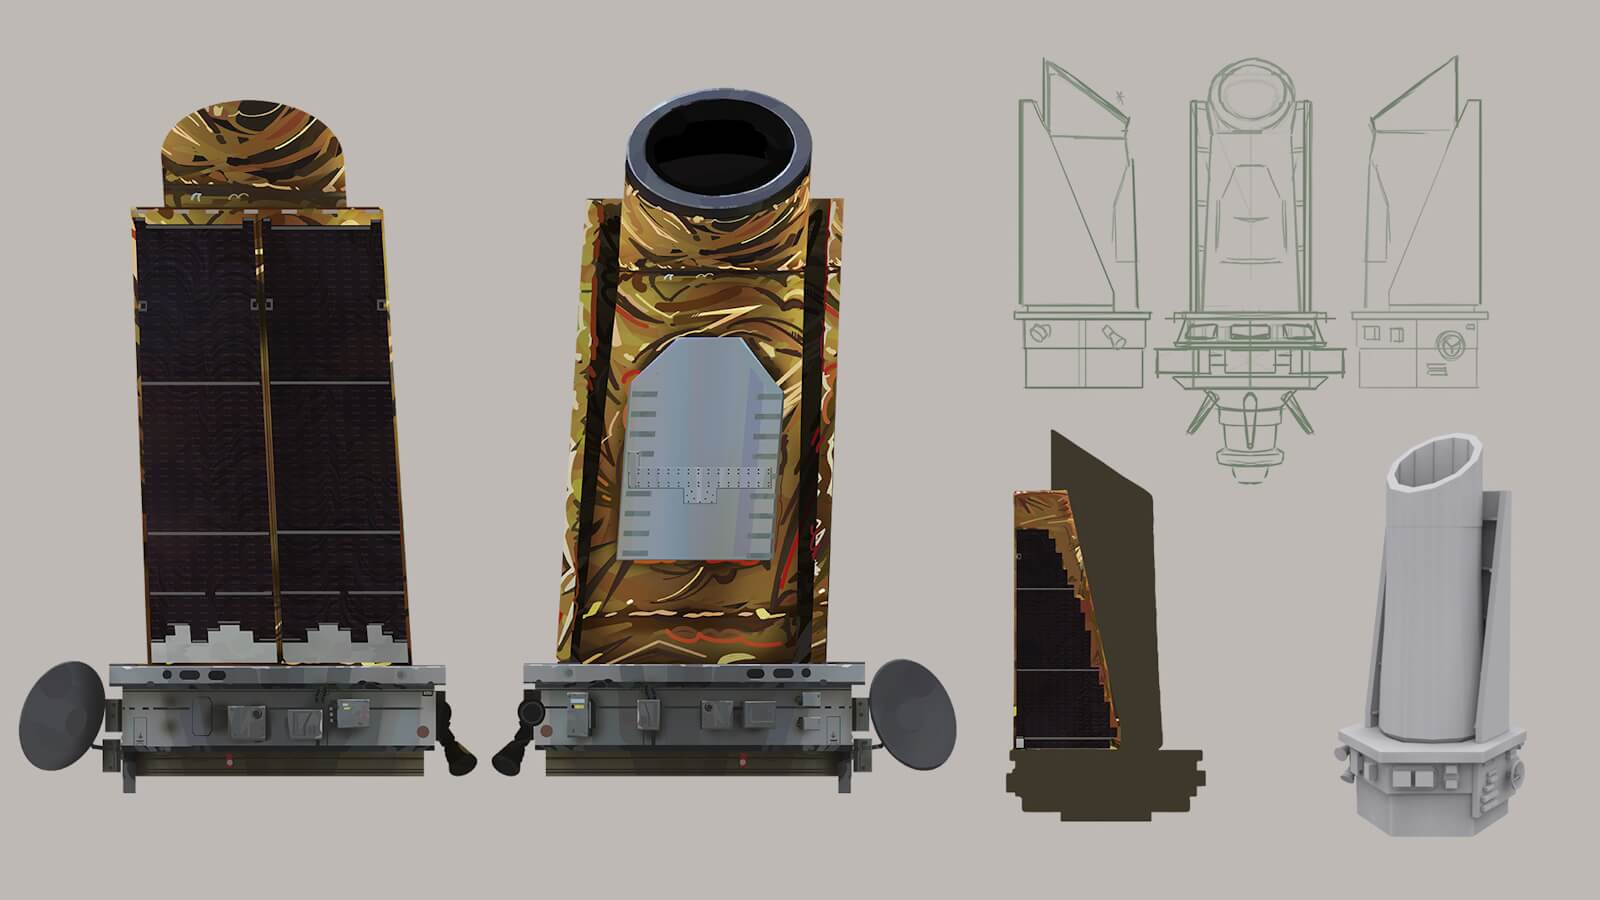 Arte conceptual para Kepler, el cohete, en las primeras etapas de desarrollo.